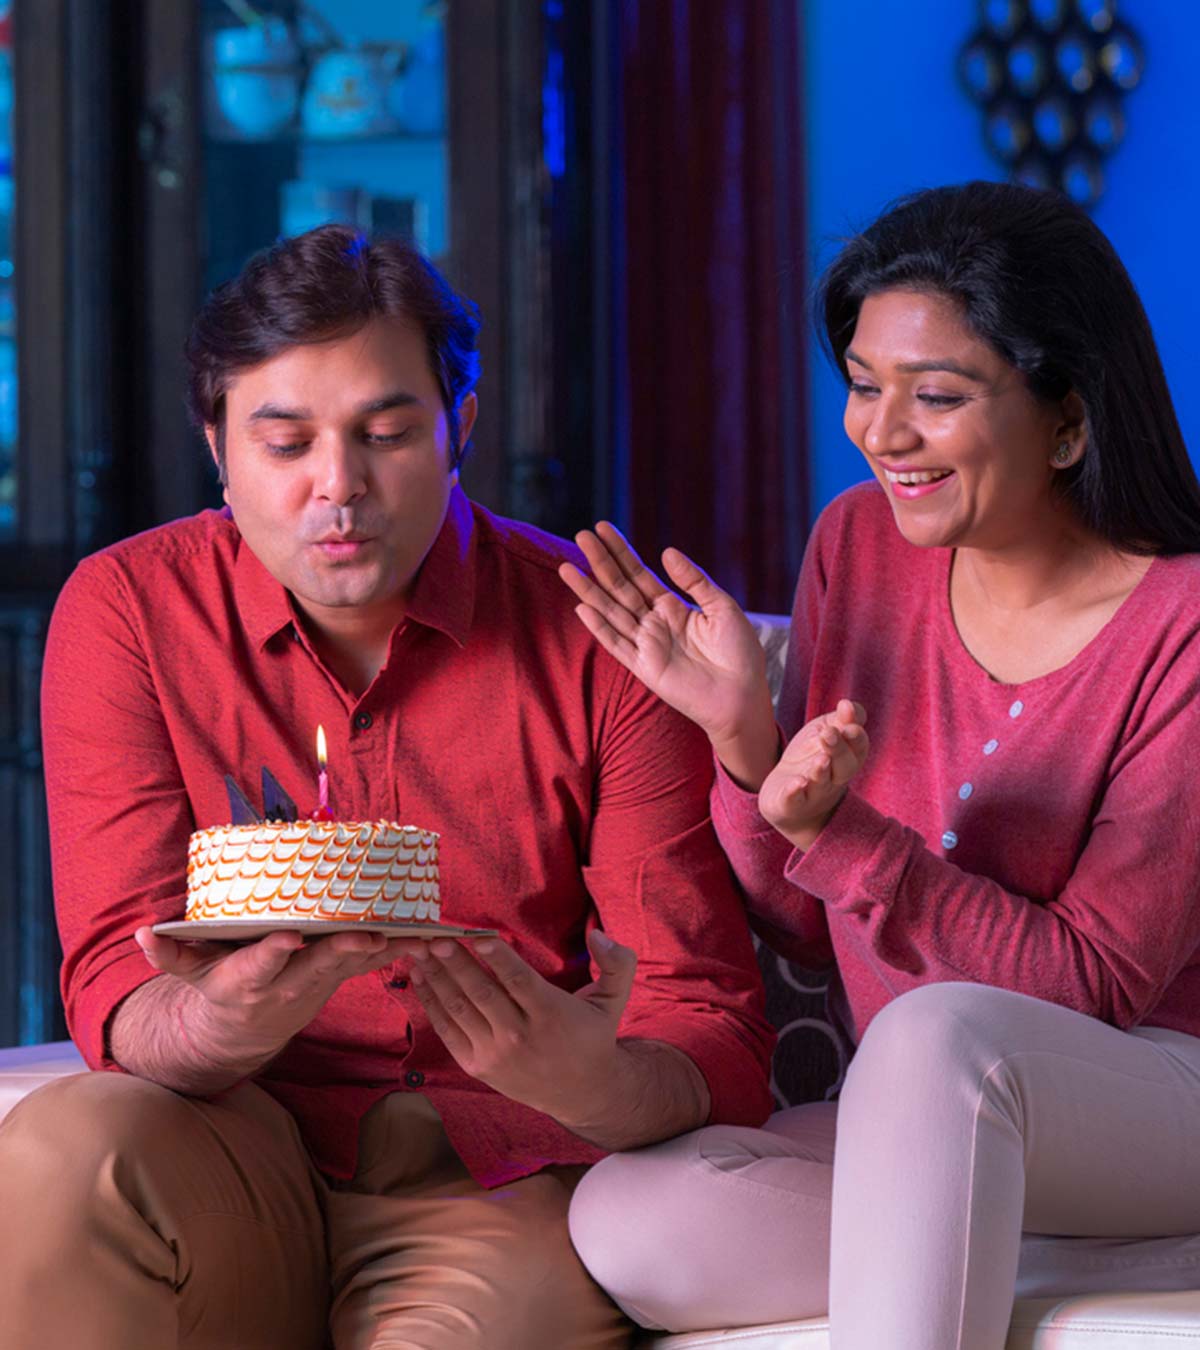 100+ Happy Birthday Wishes For Husband In Hindi | हस्बैंड के लिए बर्थडे विशेज